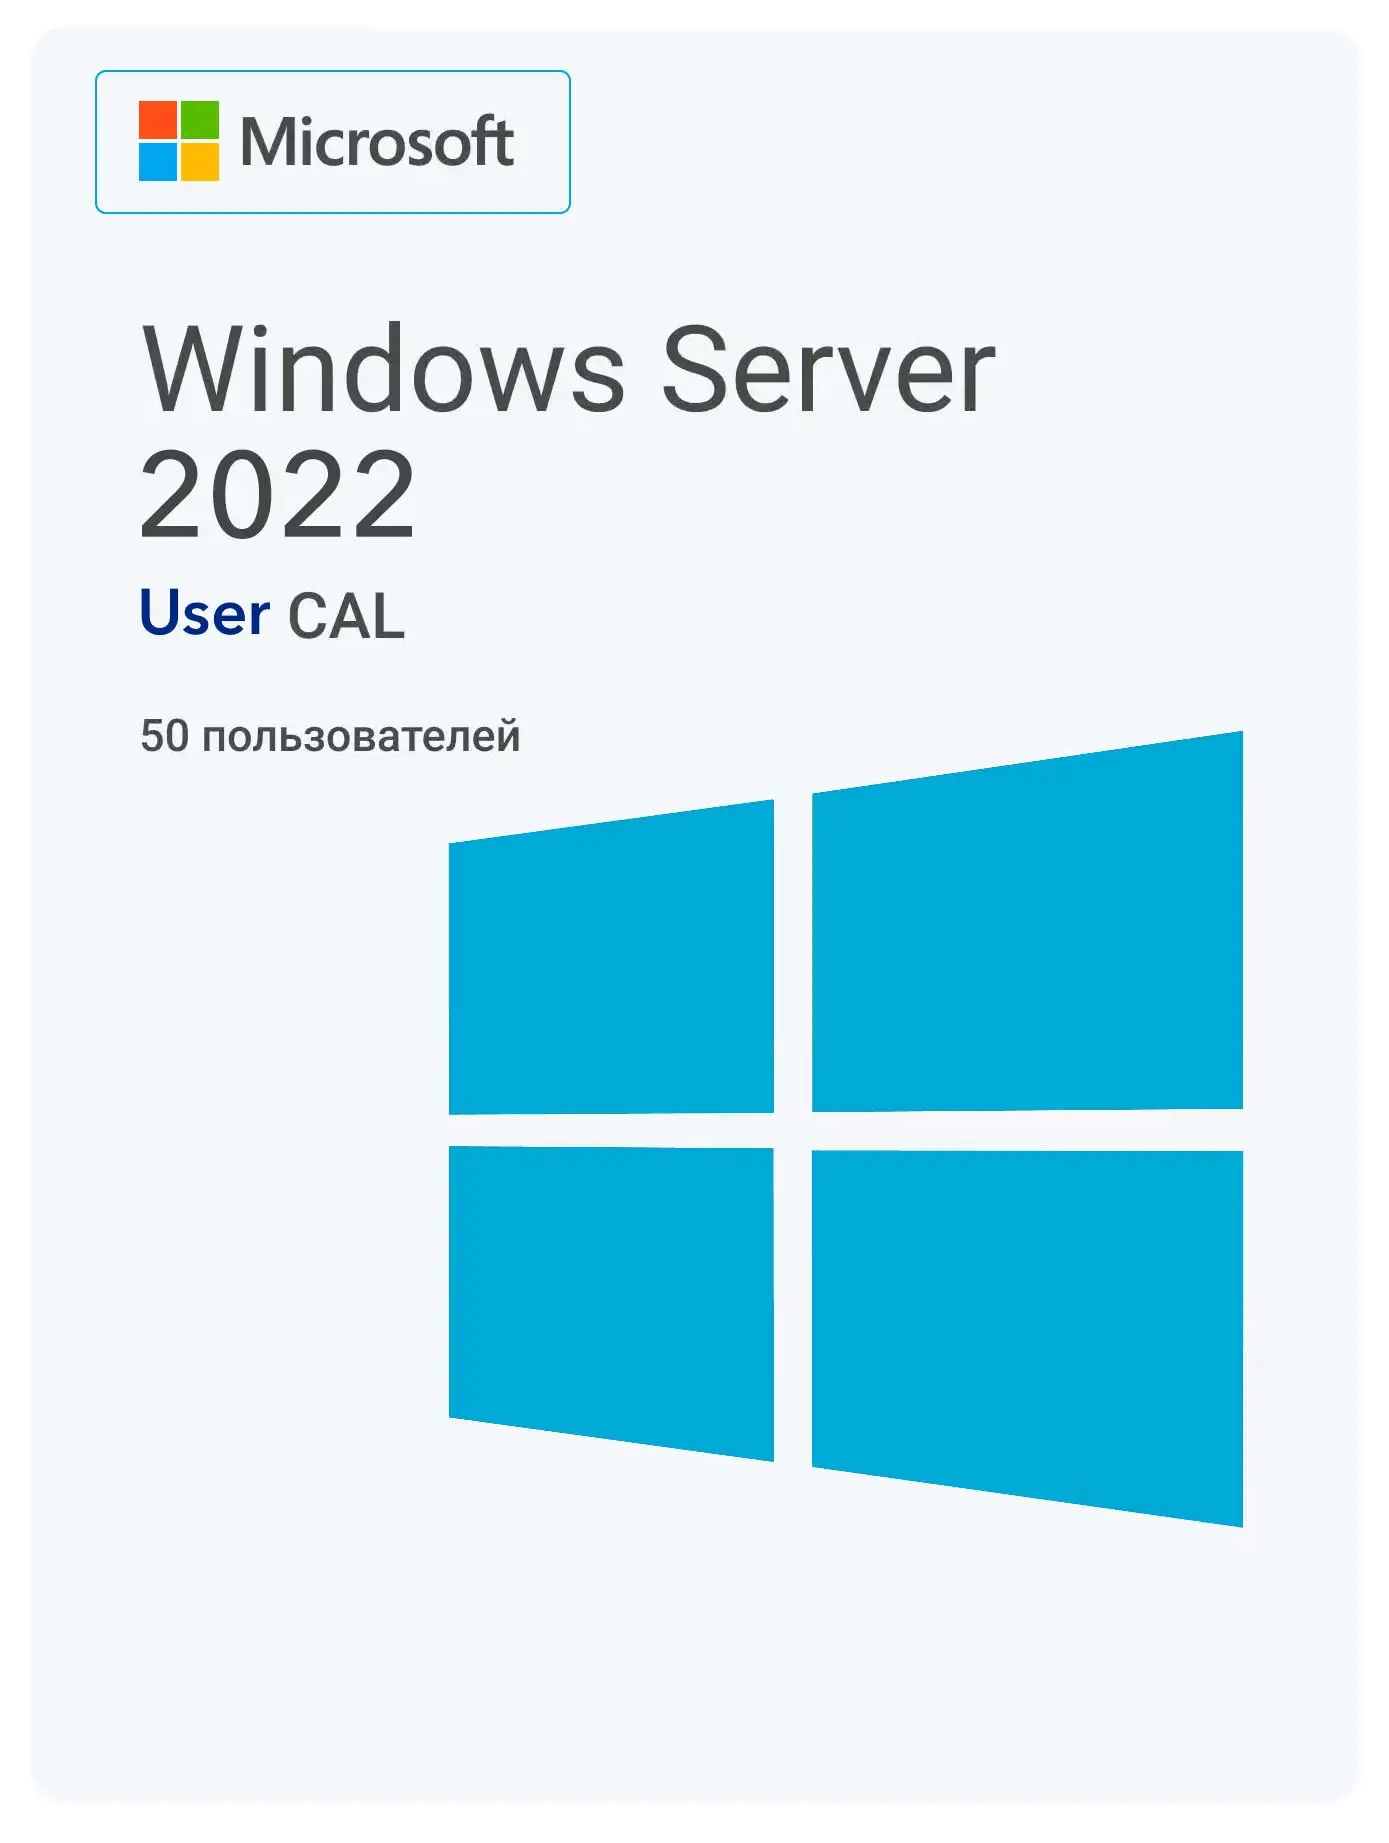 Windows Server 2022 RDS User CAL (50 User)